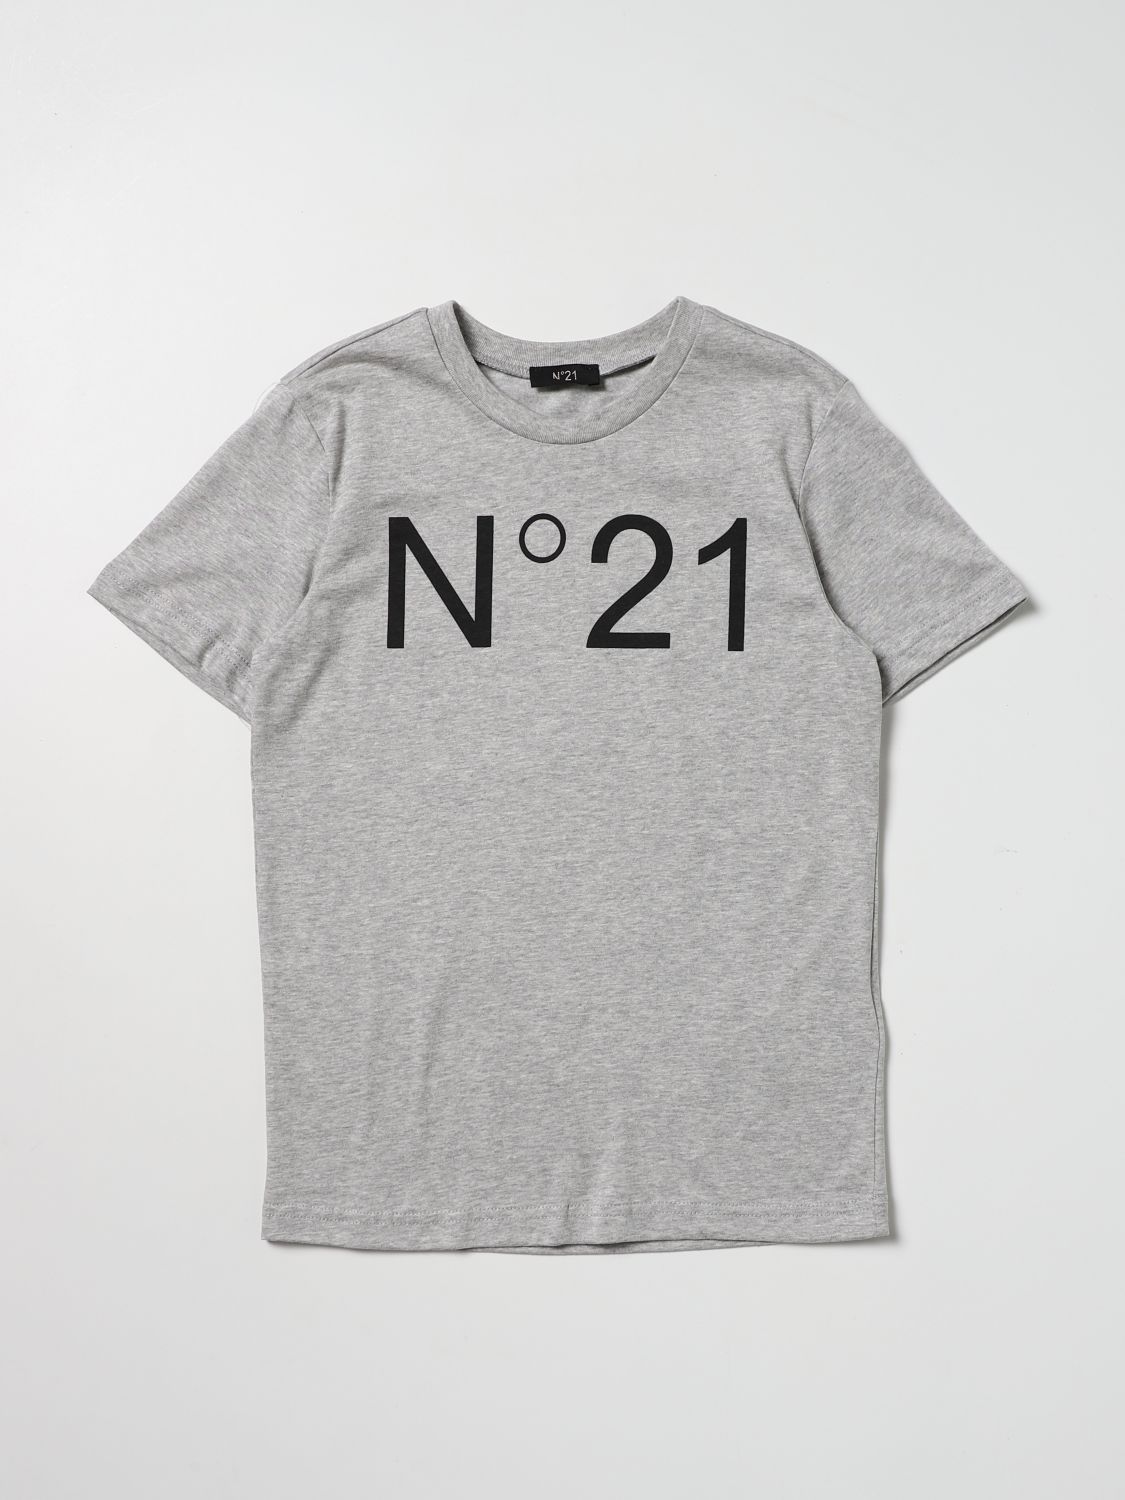 Tシャツ N° 21: Tシャツ N° 21 男の子 グレー 1